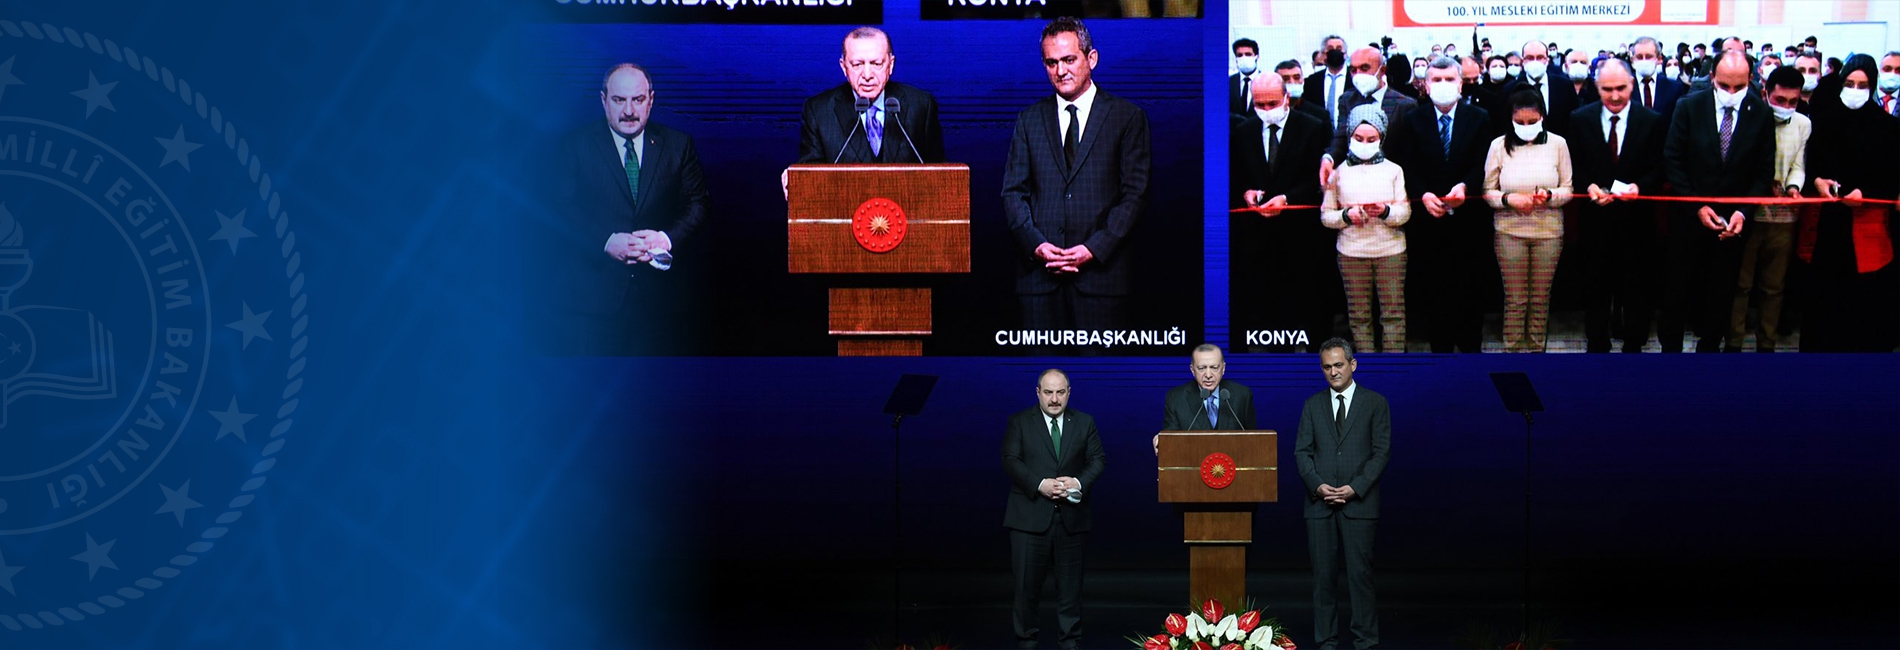 OSB Mesleki Eğitim Merkezleri Toplu Açılışı Cumhurbaşkanı Erdoğan'ın Katılımıyla Gerçekleştirildi